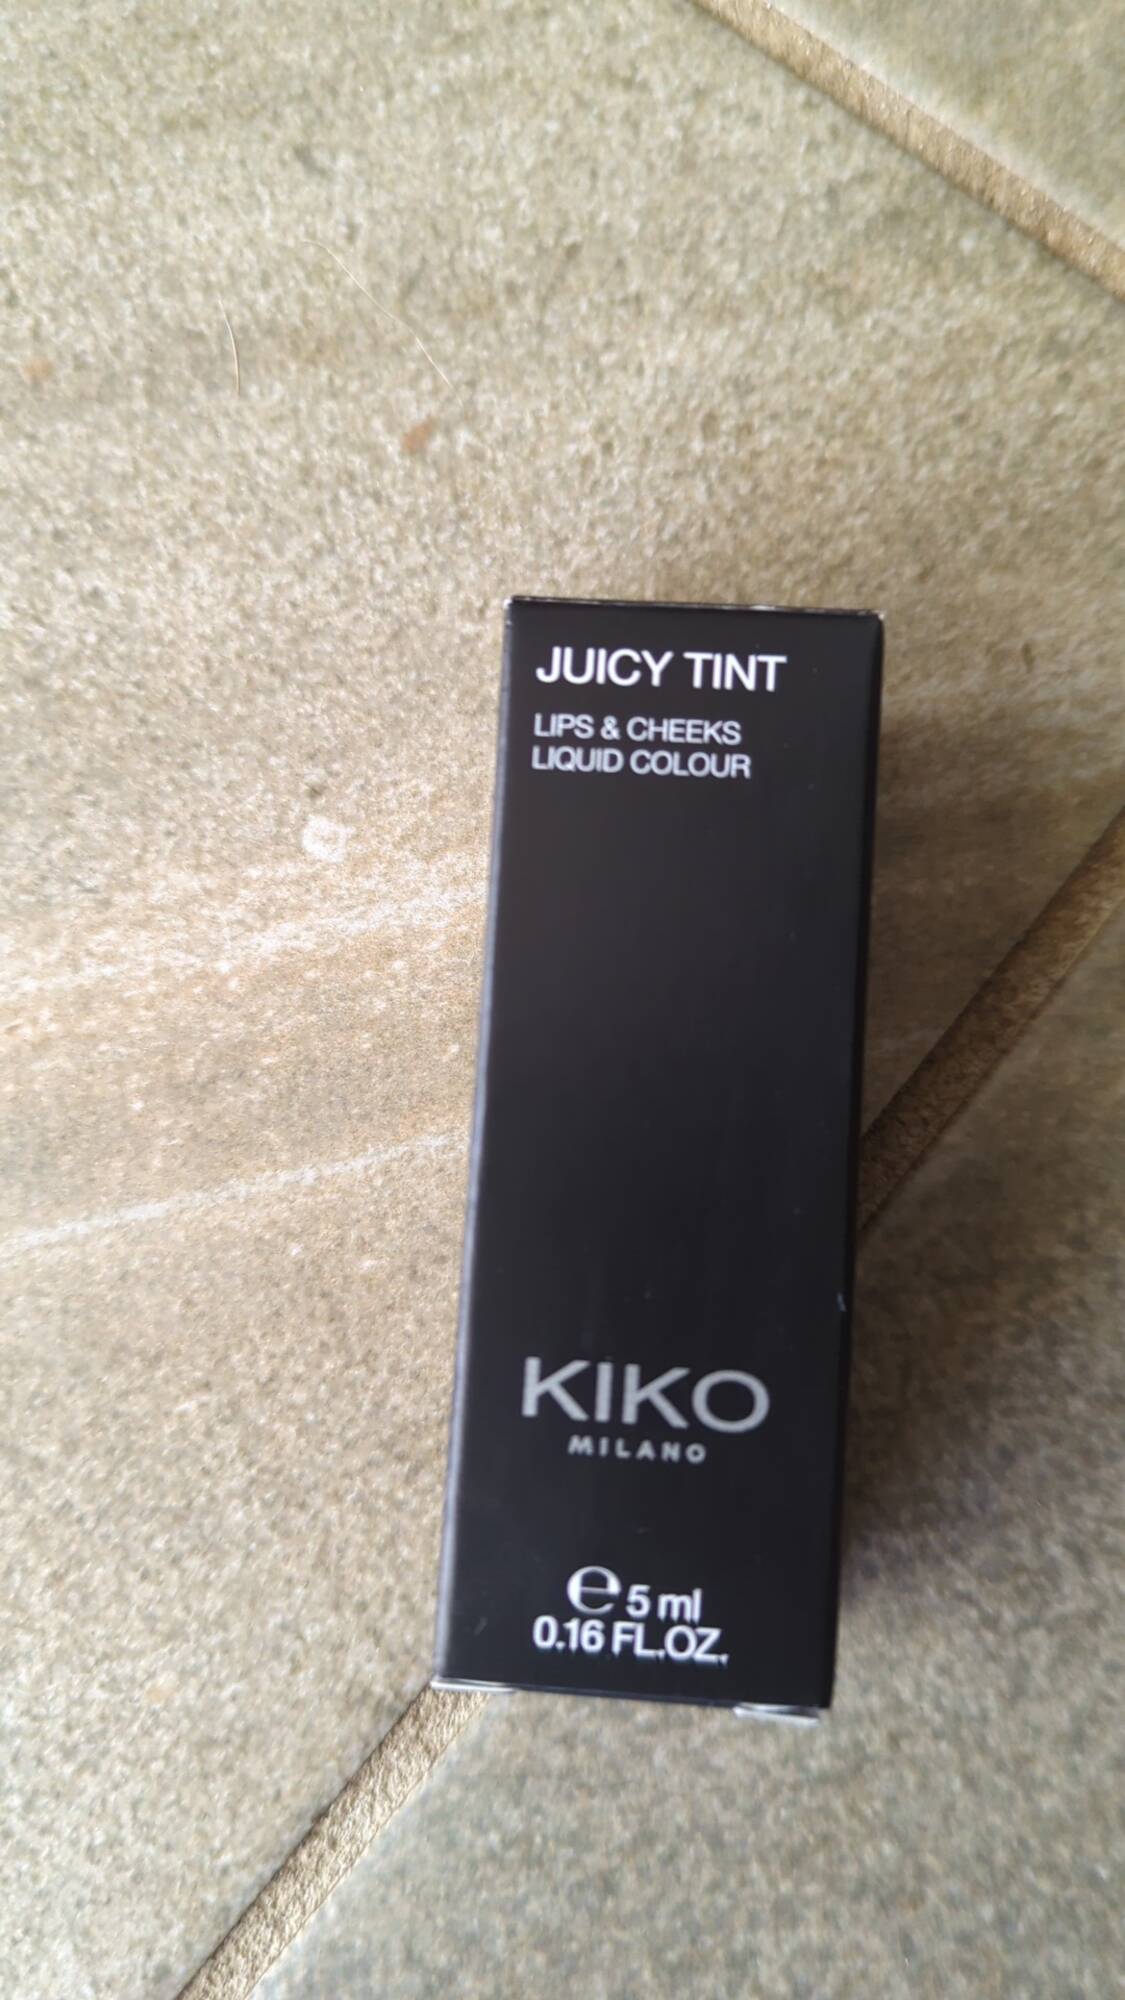 KIKO - Juicy tint - Lips & cheeks liquid colour